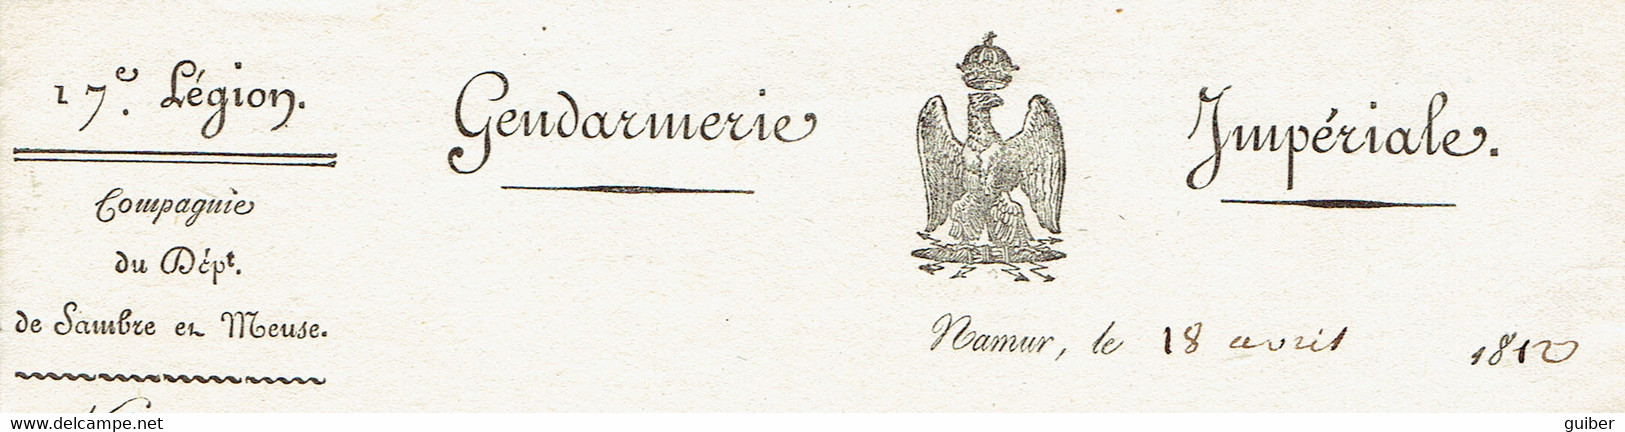 Gendarmerie Impériale 1812 L.manuscrite Capitaine Marotte Sambre Meuse Prefet Légionnaire Empire Namur Maire Havelange - Manuscritos